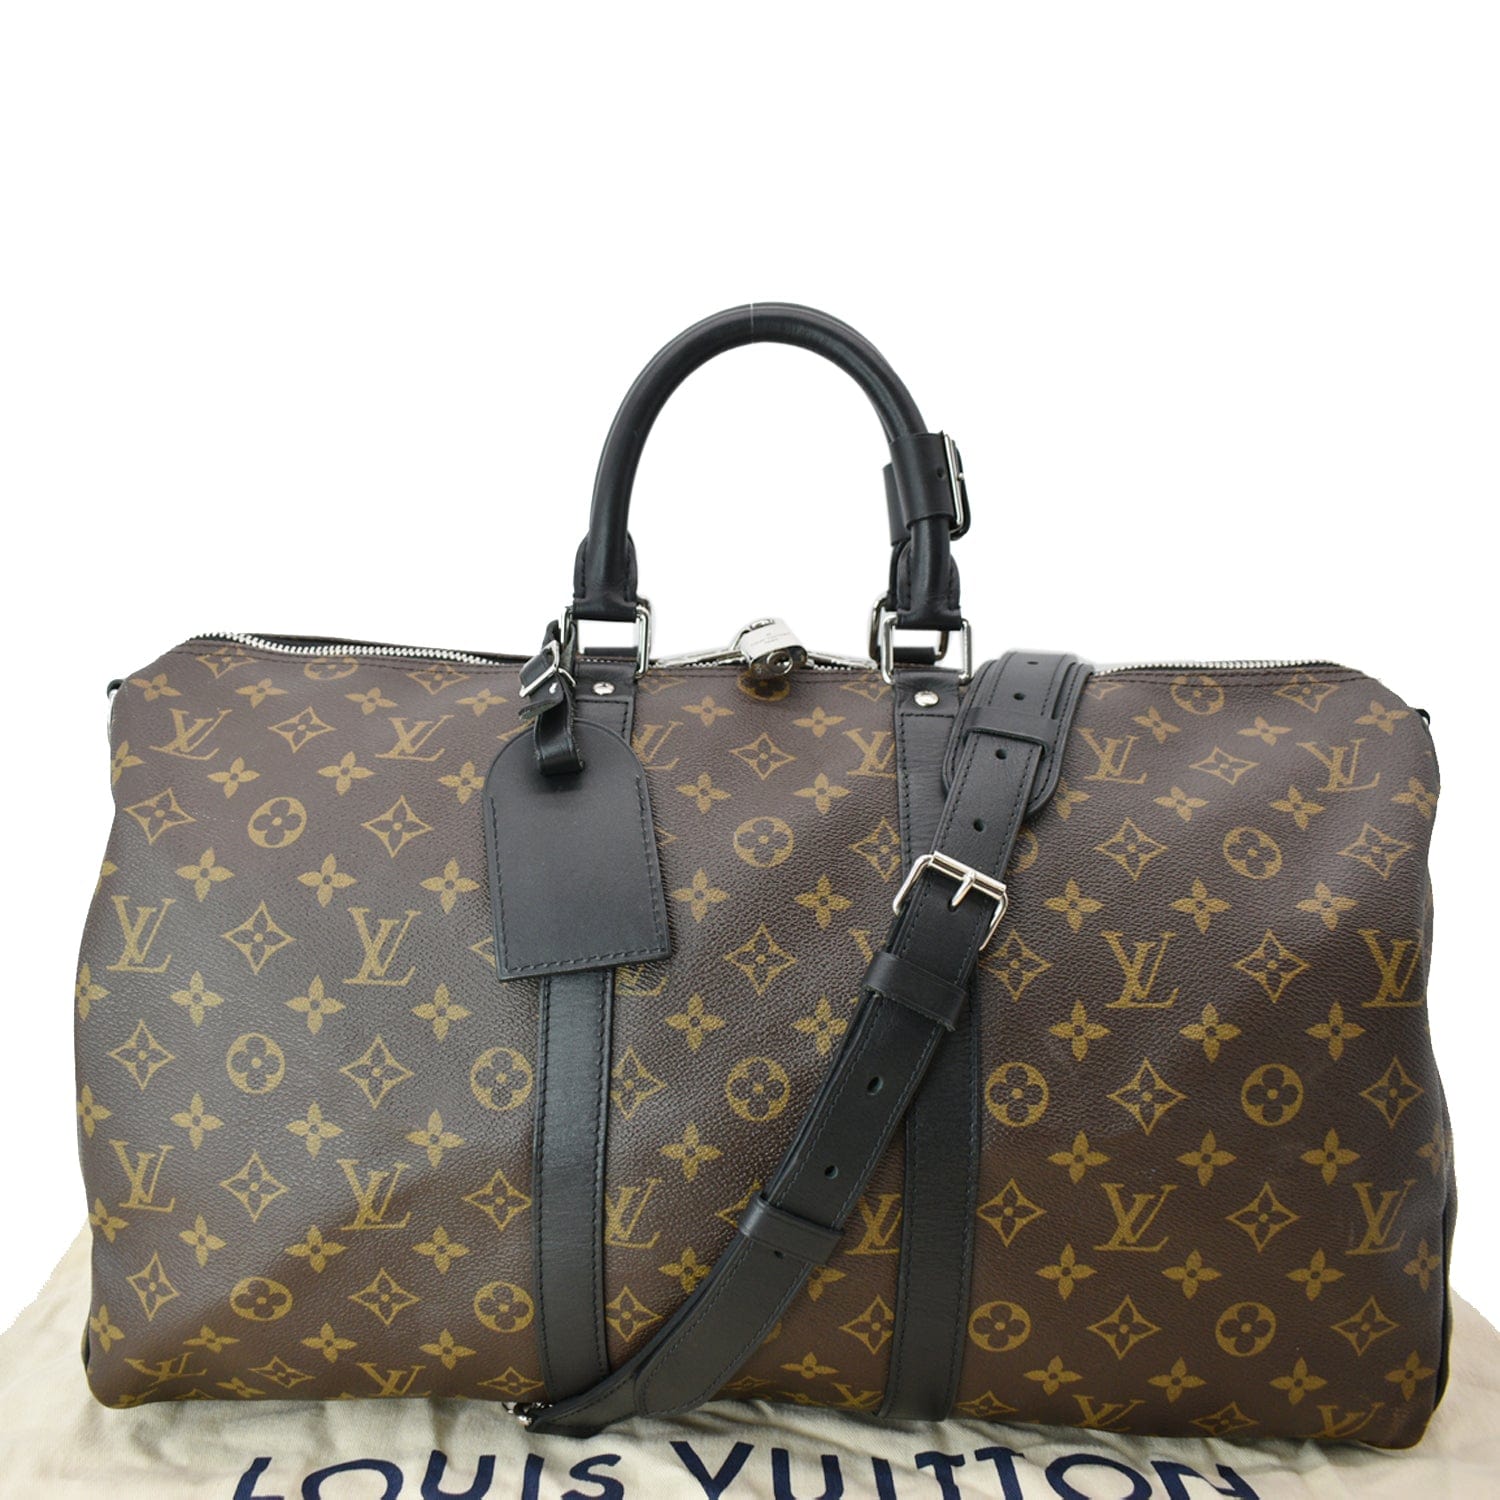 Louis Vuitton Metallic Duffle Bag